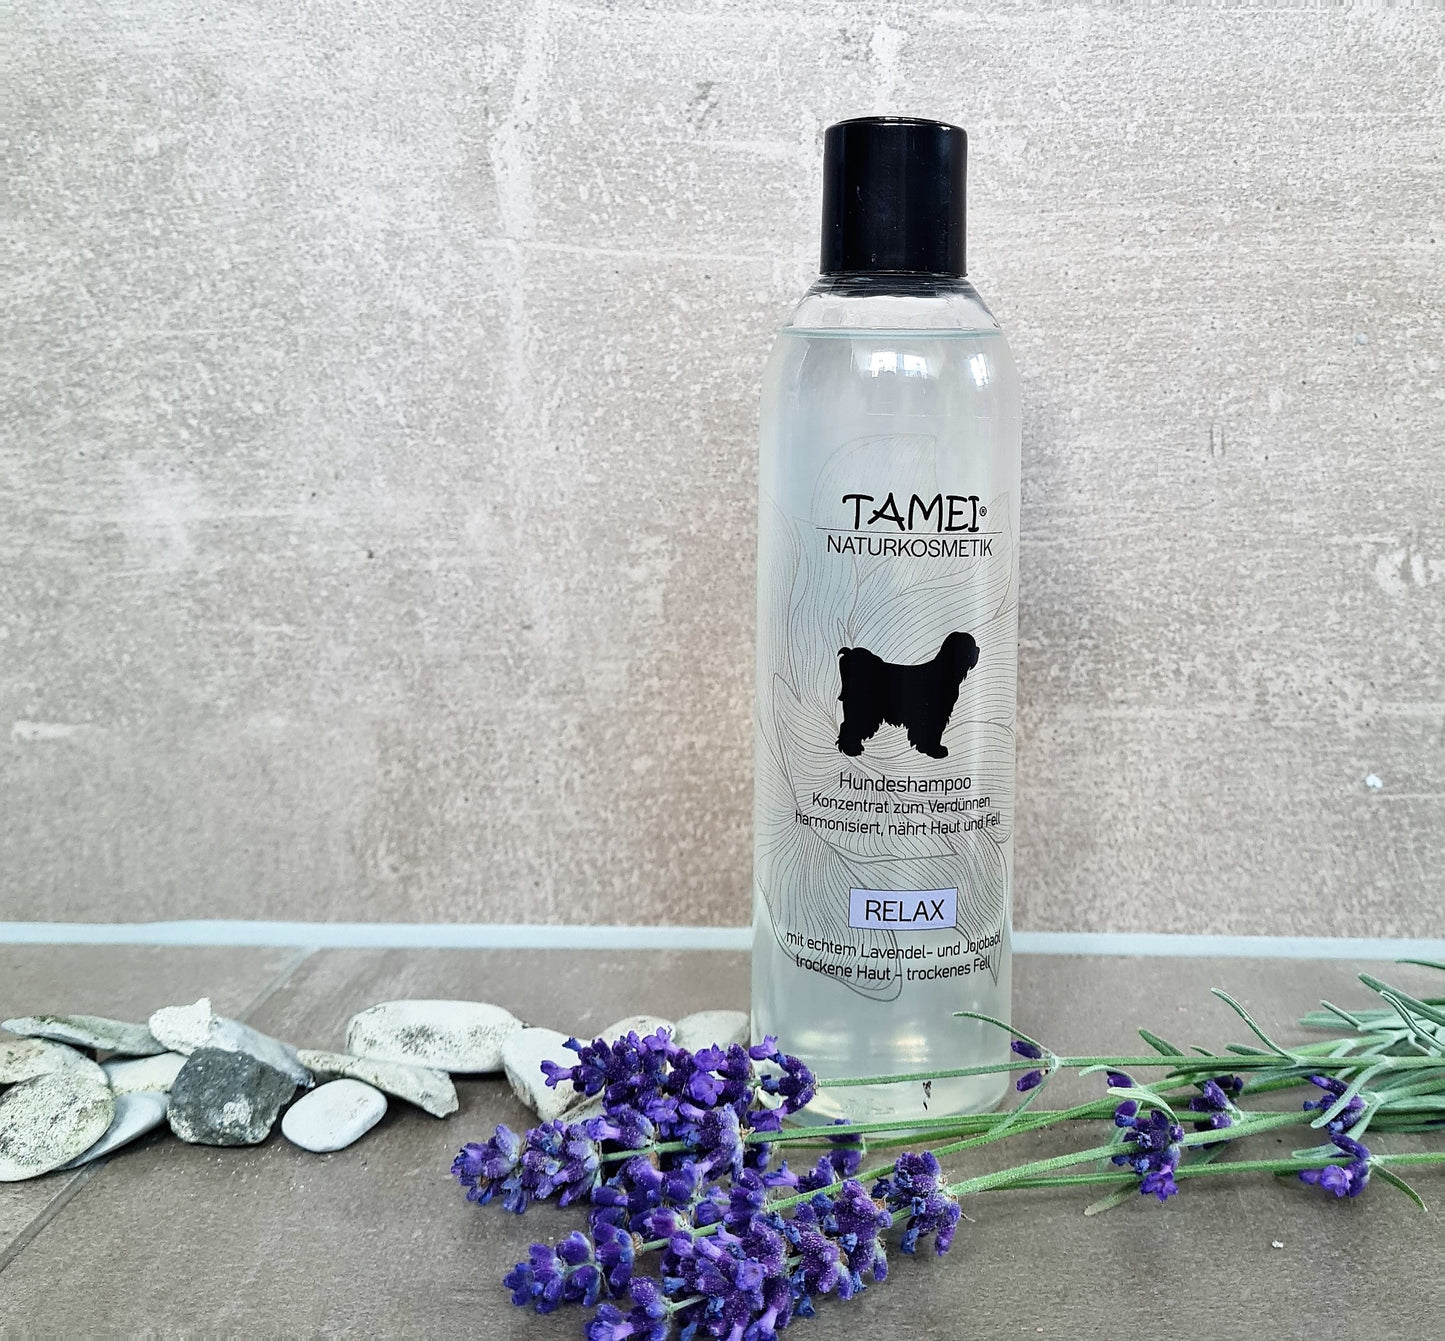 Tamei Shampoo  Relax |  Flaschen per 3 Stück| Kanister per 1 Stück